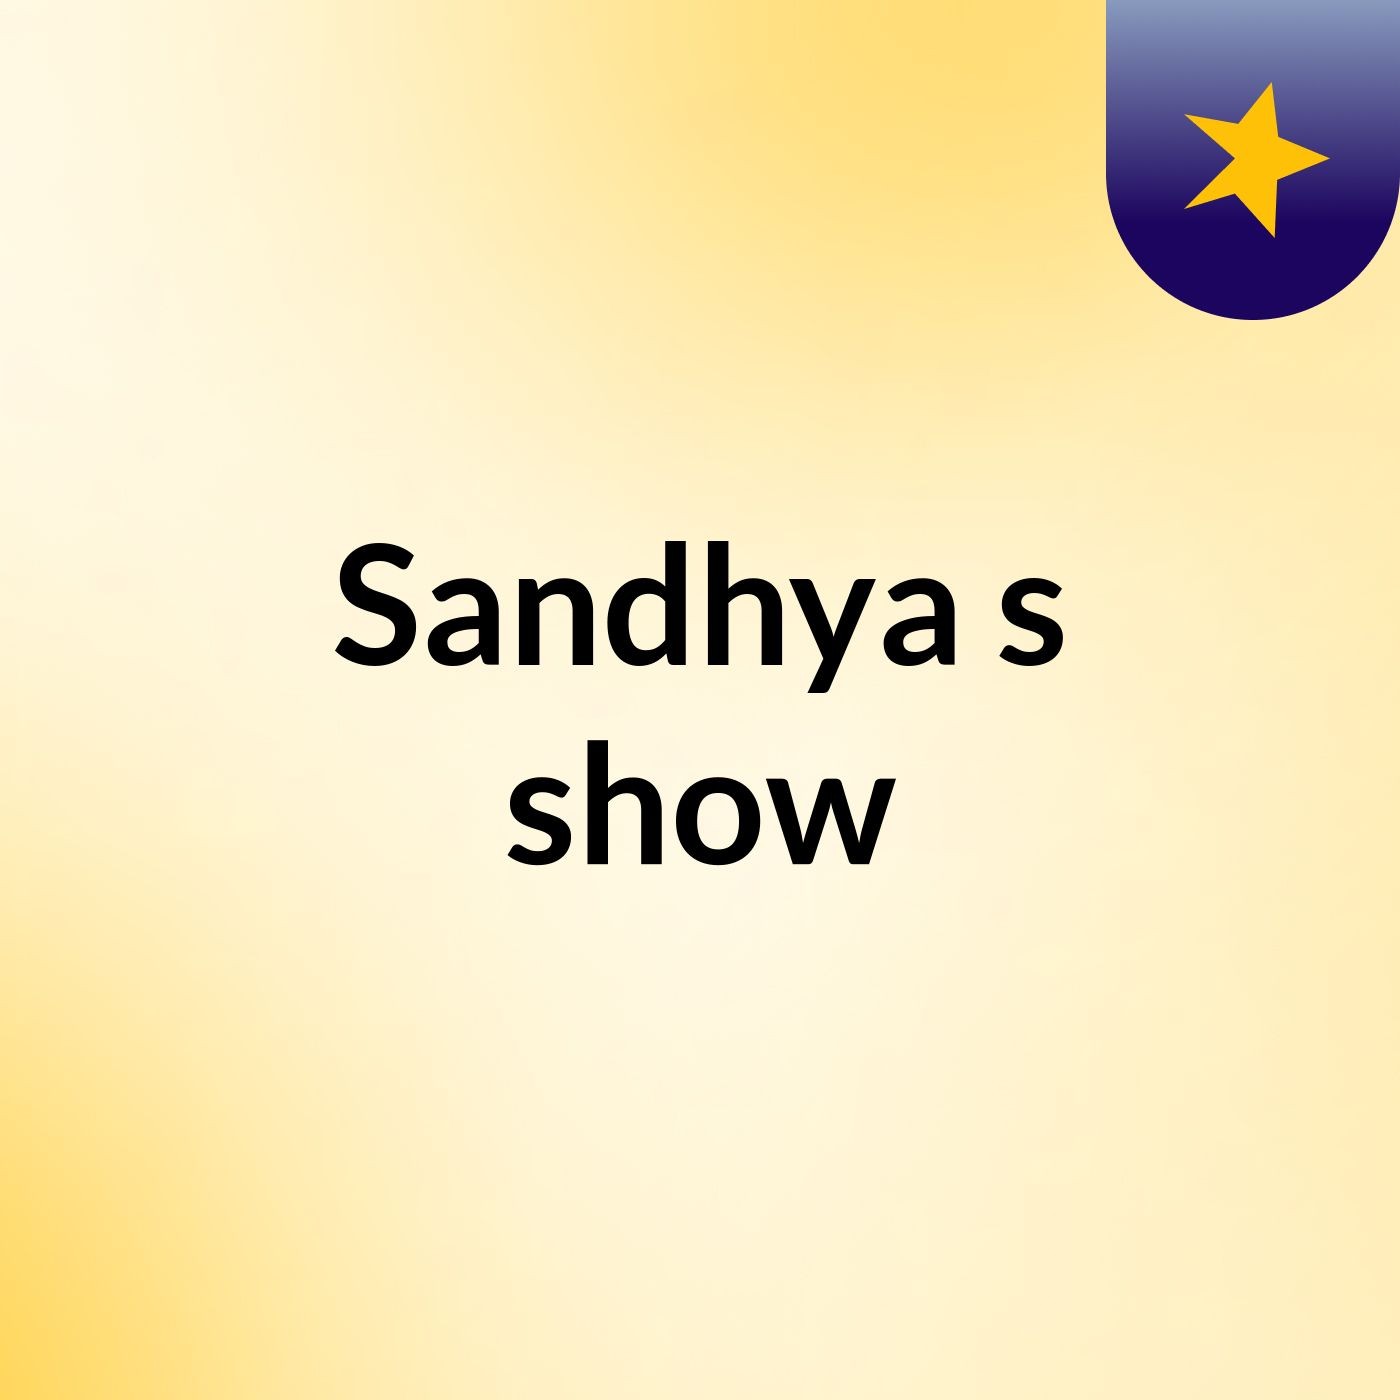 Sandhya's show